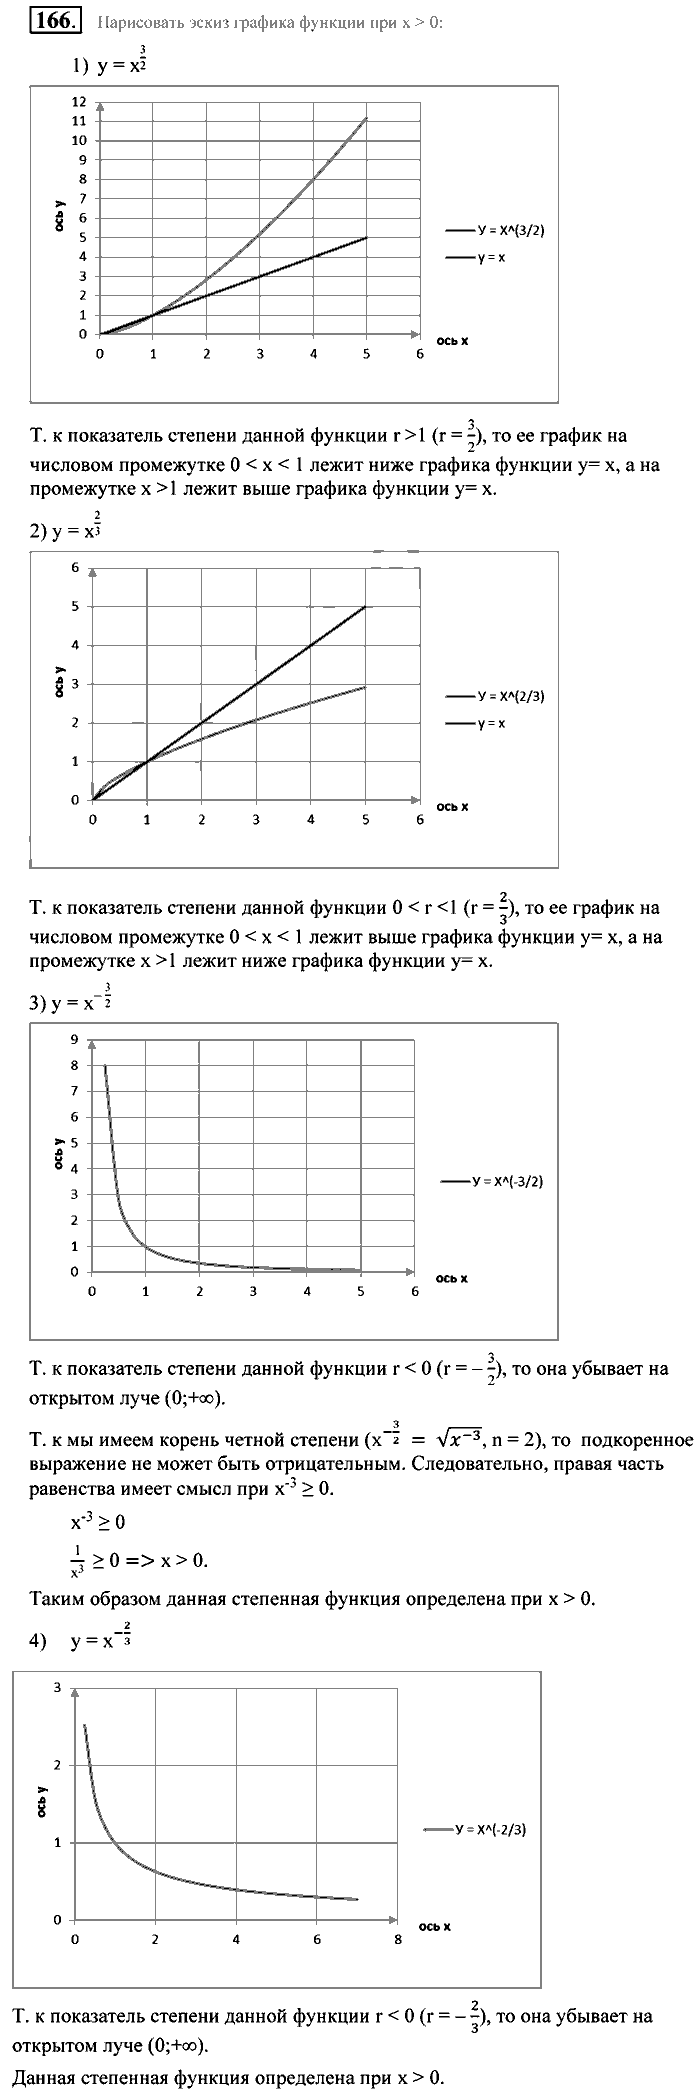 Алгебра, 9 класс, Алимов, Колягин, 2001, Проверь себя Задание: 166